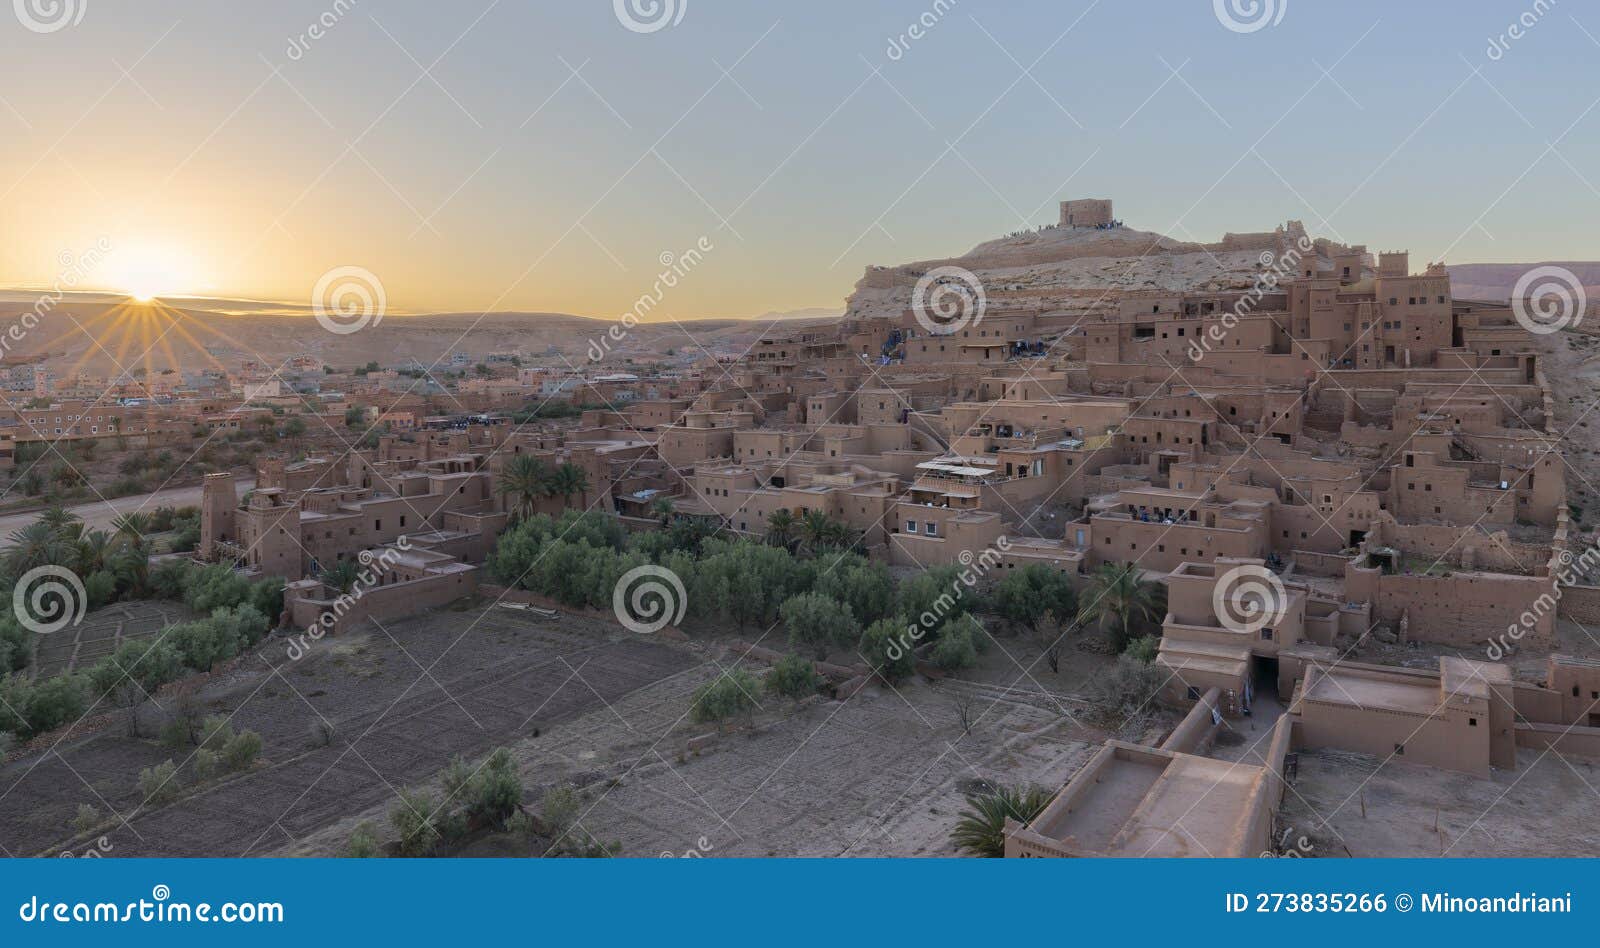 kasbah ait ben haddou nelle montagne dell'atlante del marocco. patrimonio mondiale dell'unesco dal 1987